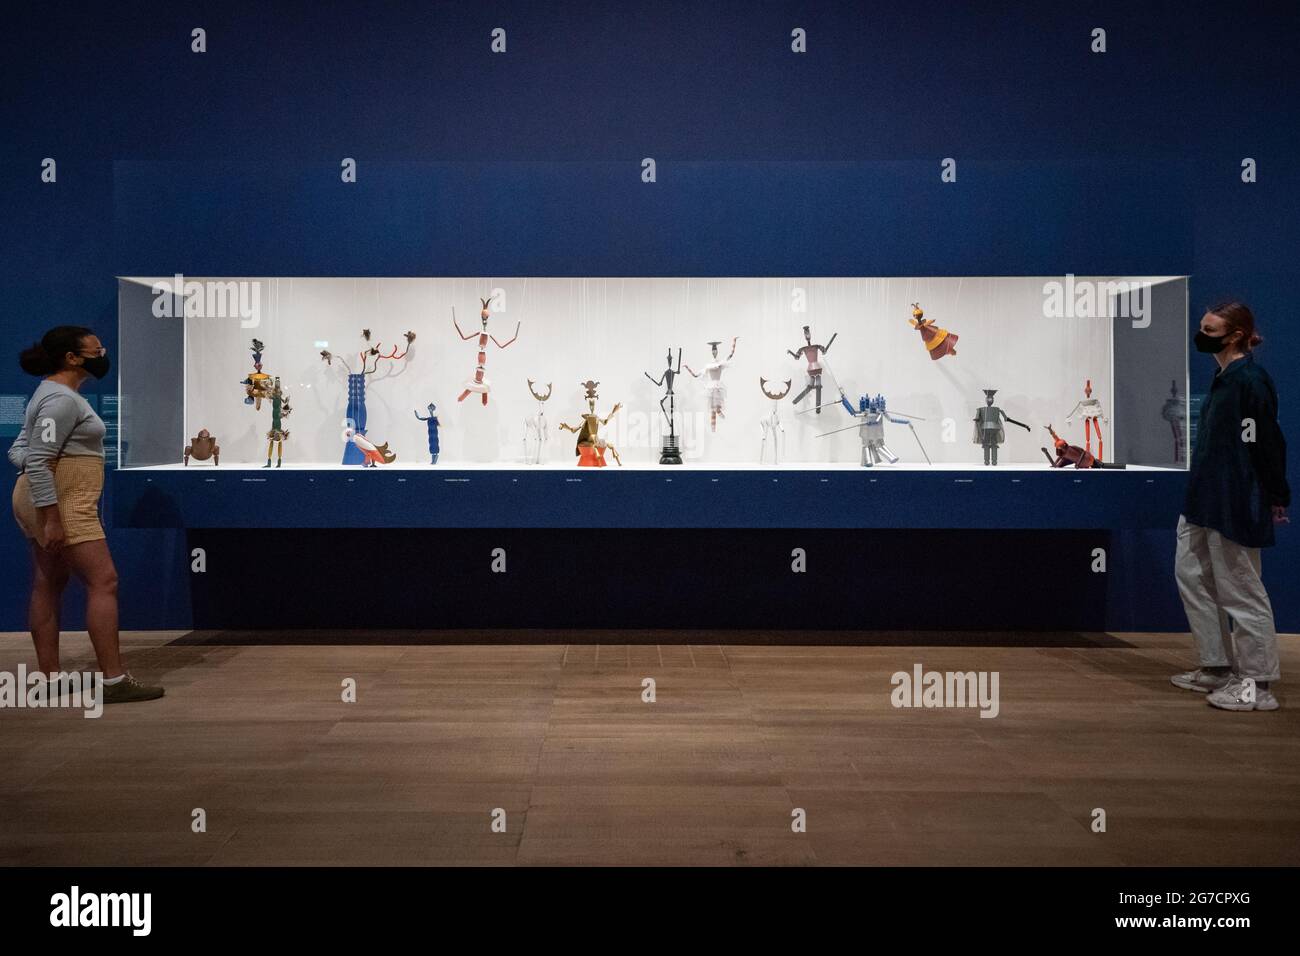 Les gens voient 17 marionnettes à cordes Dada Marionettes King Stag de Sophie Taeuber-ARP exposées lors d'un appel photo pour la nouvelle exposition Sophie Taeuber-ARP au Tate Modern de Londres. Date de la photo: Mardi 13 juillet 2021. Banque D'Images